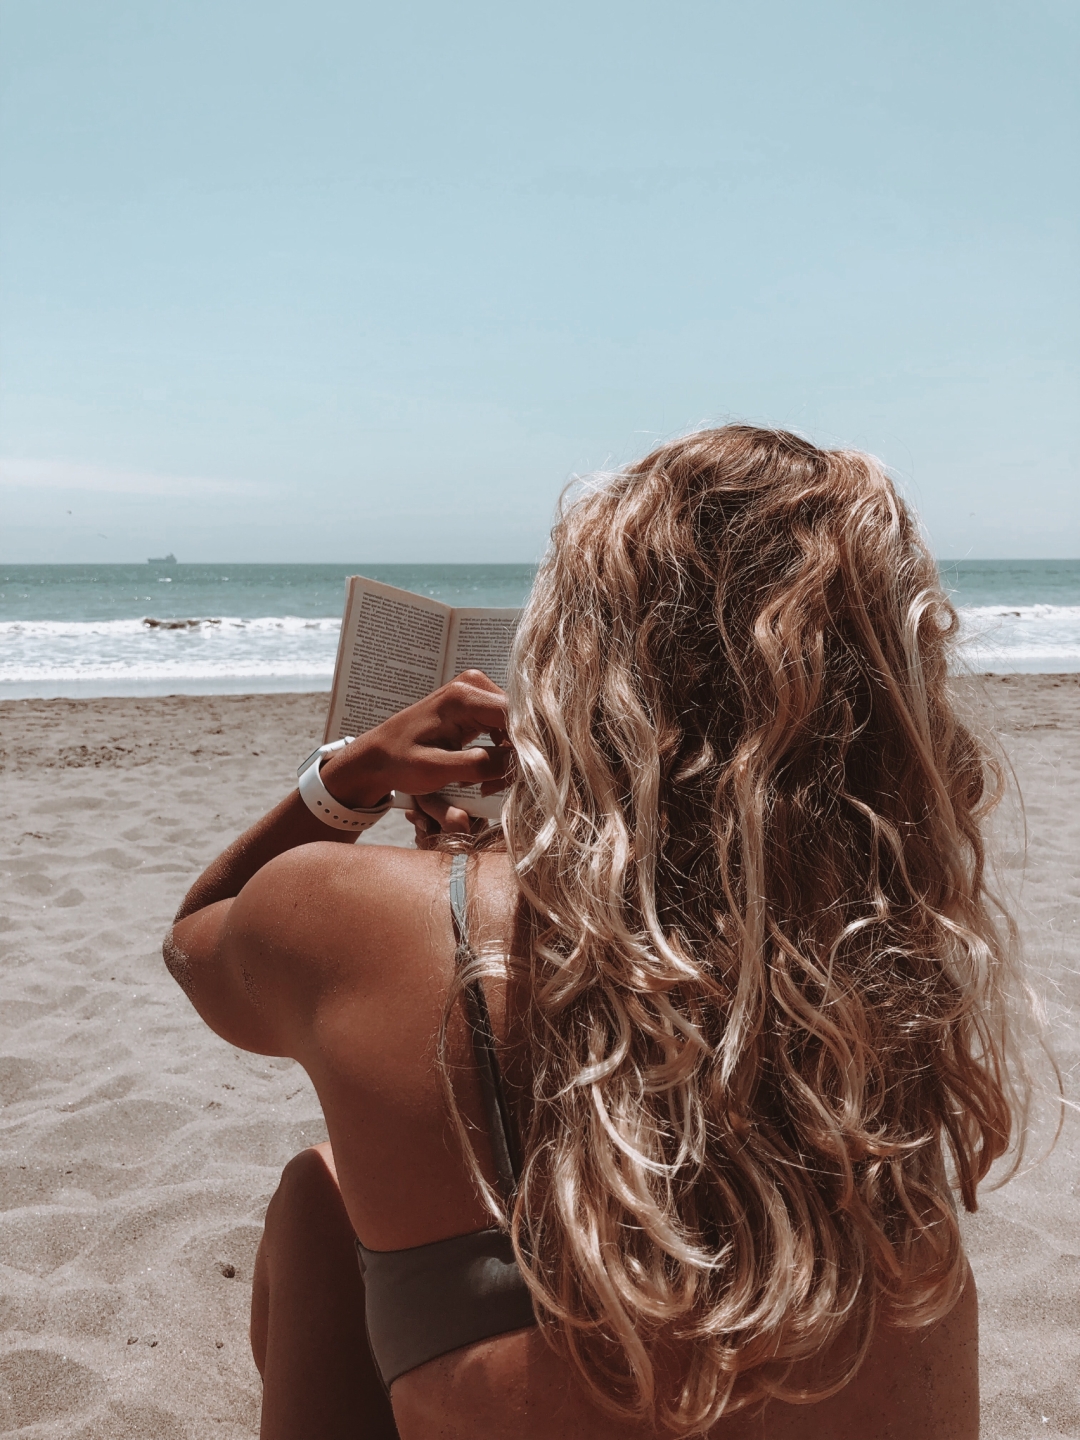 čitanje na plaži